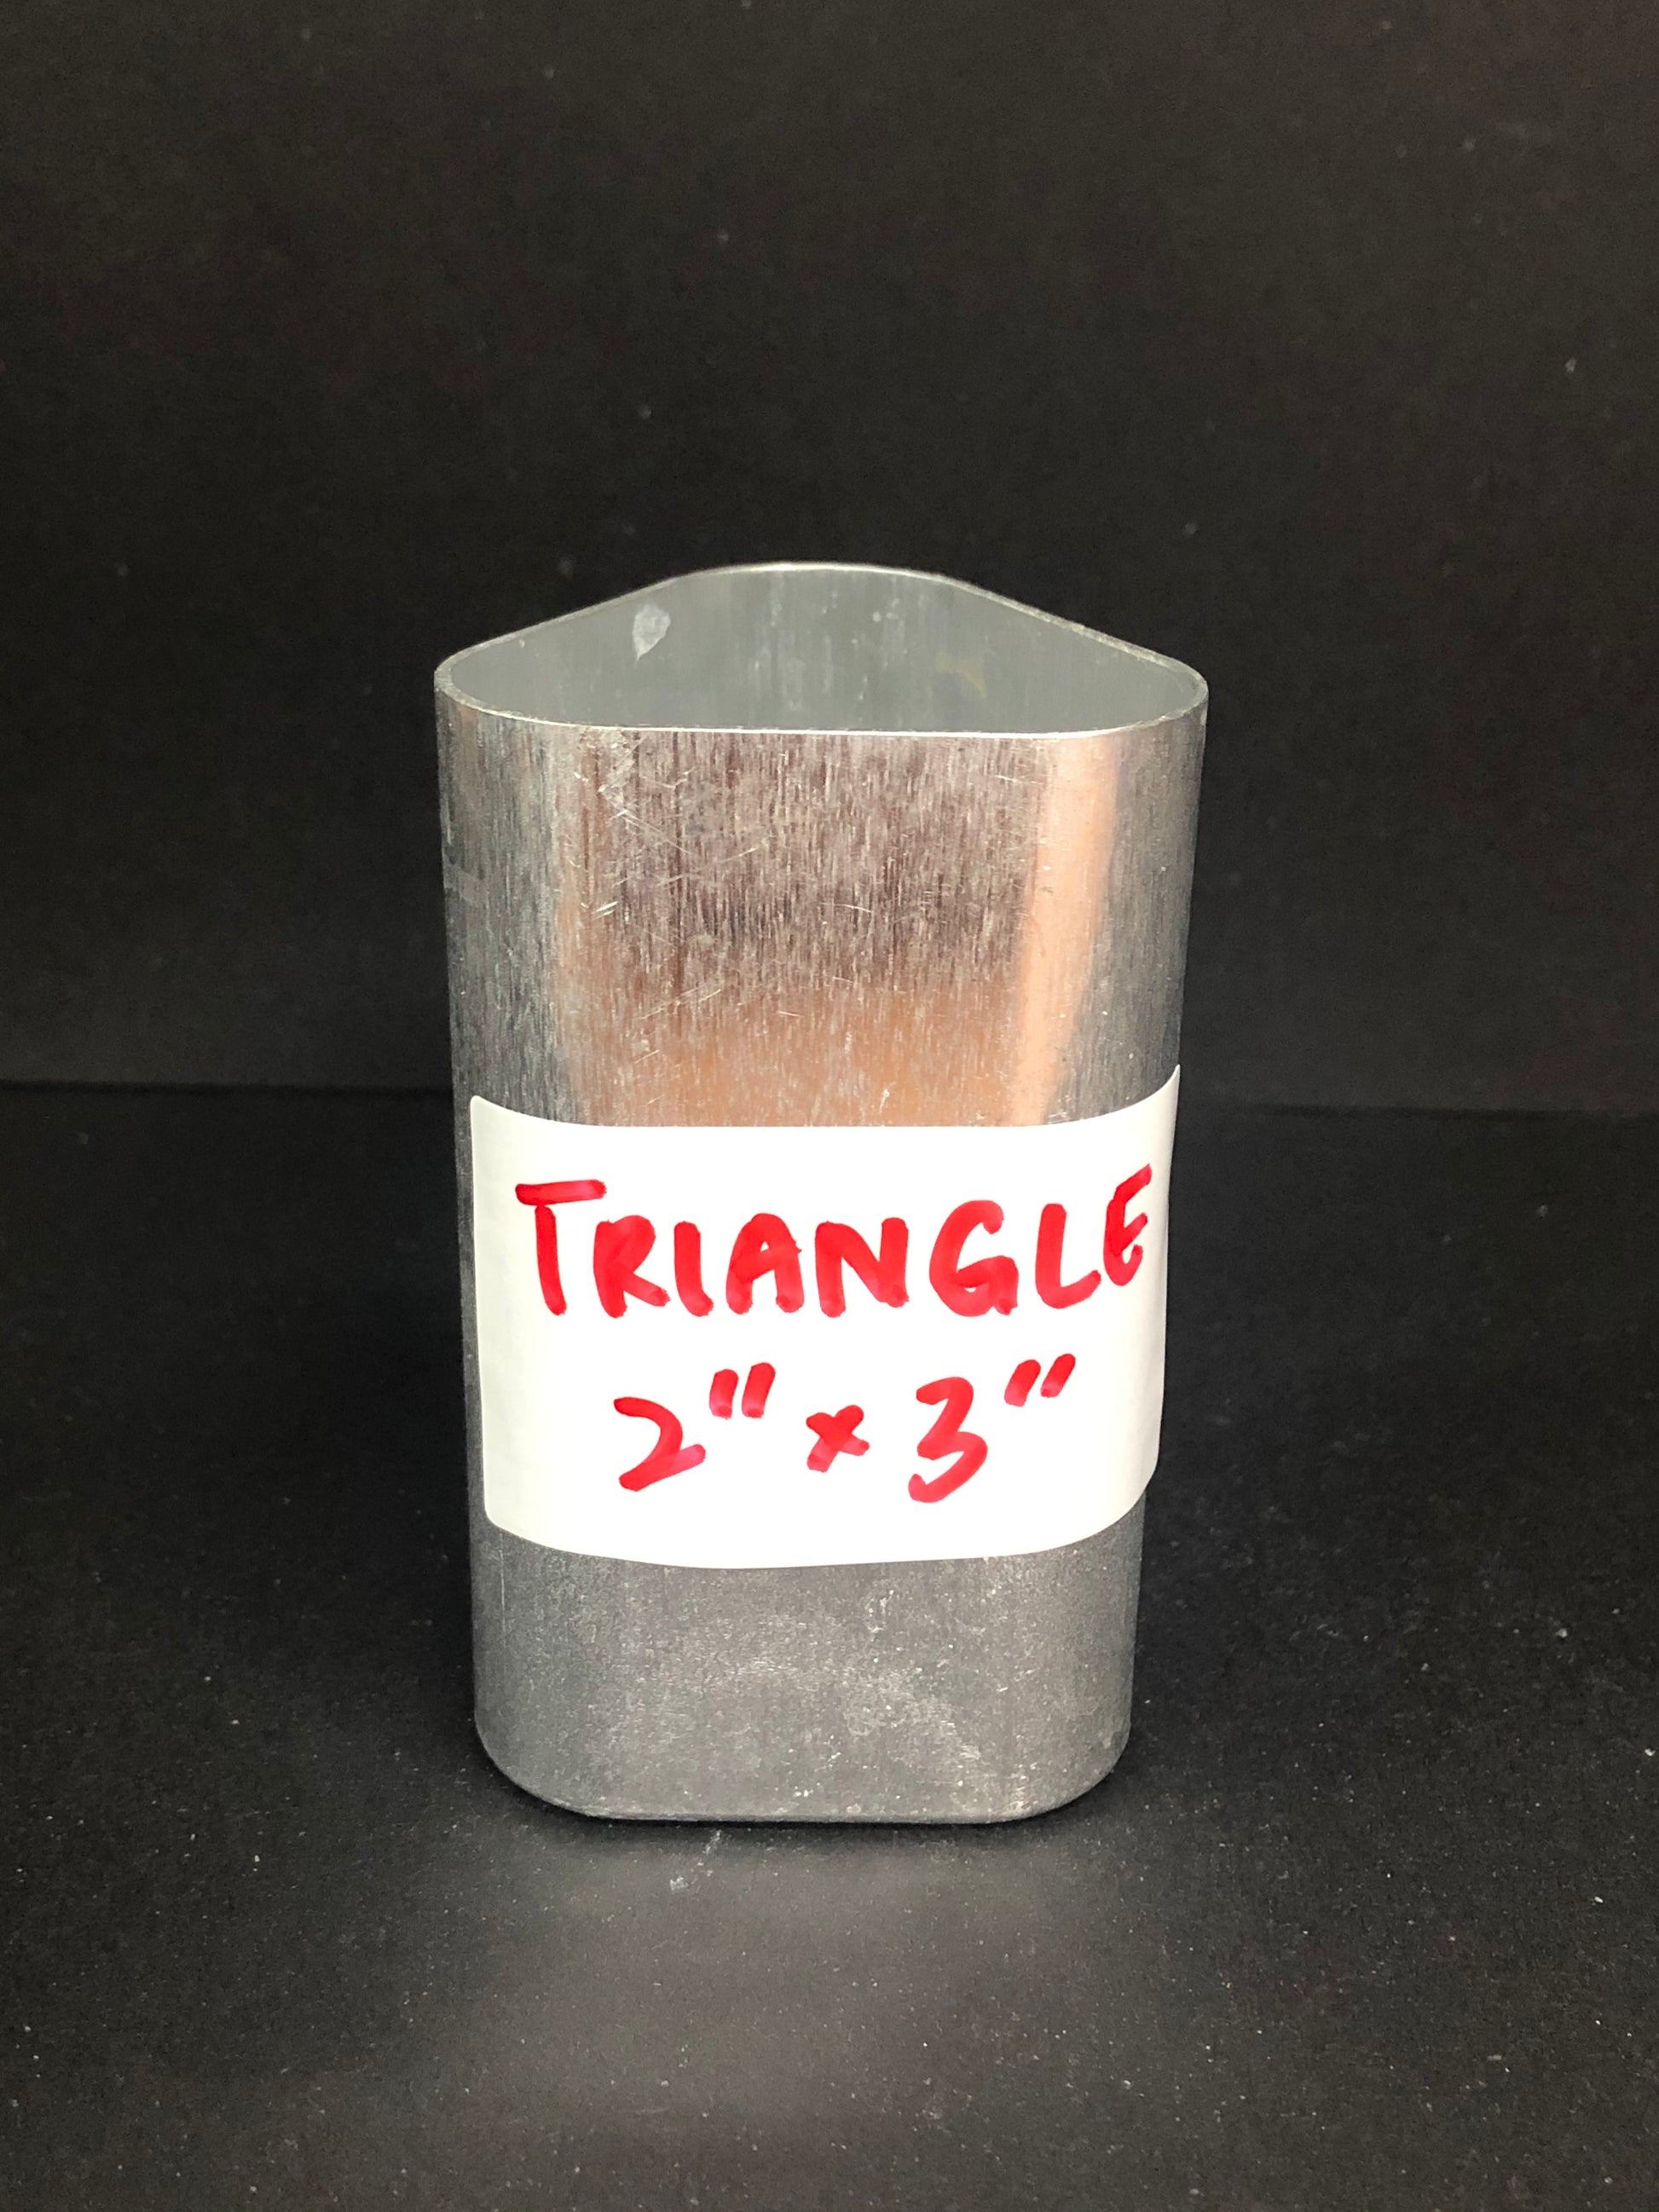 Triangle Aluminium Candle Mold - 2" x 3"